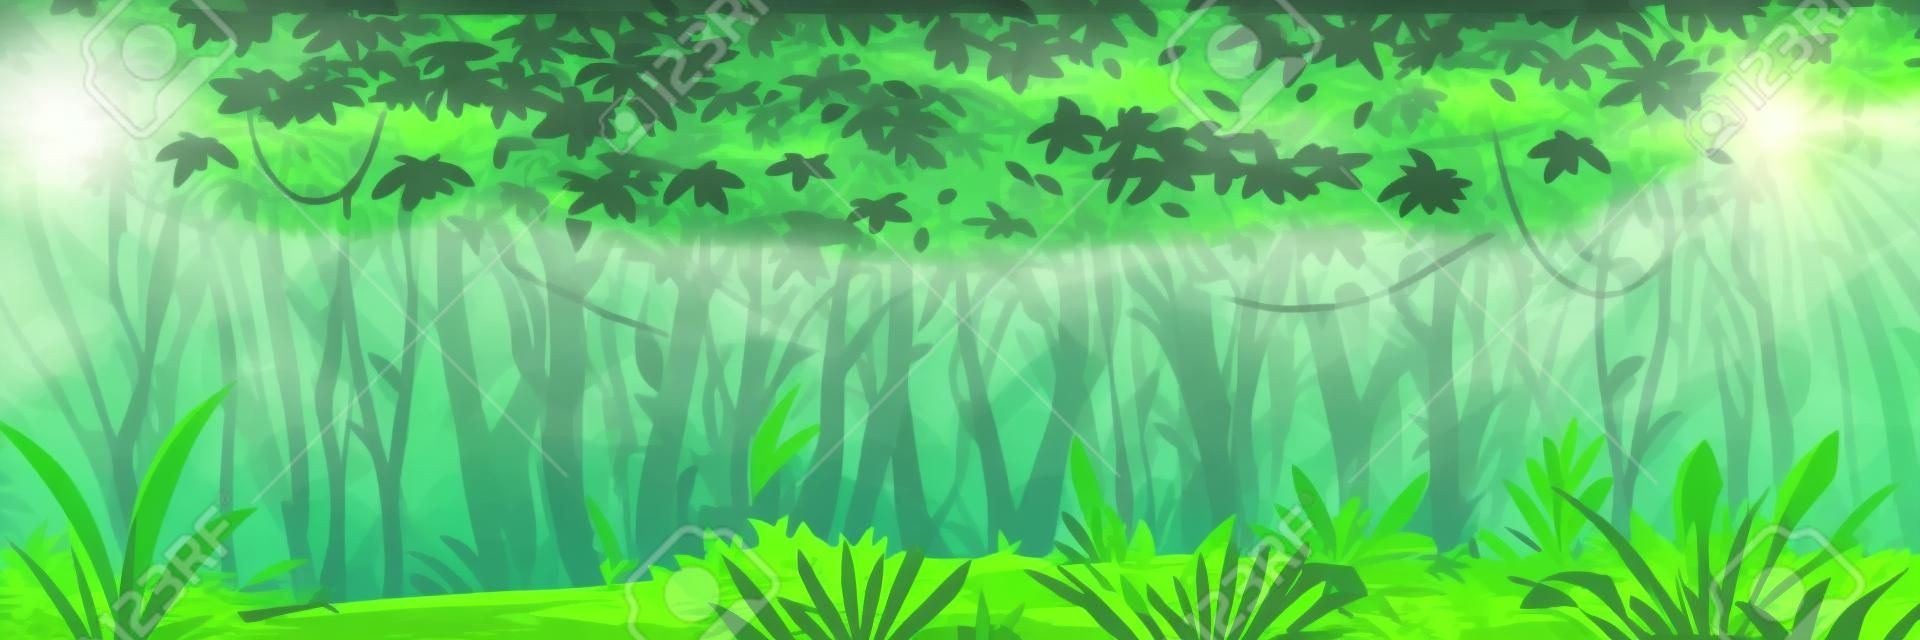 Foresta selvaggia della giungla scura umida con alberi, cespugli e liane, paesaggio naturale con fogliame verde della giungla e piante esotiche che crescono a terra, banner orizzontale con piante tropicali in giornata di sole